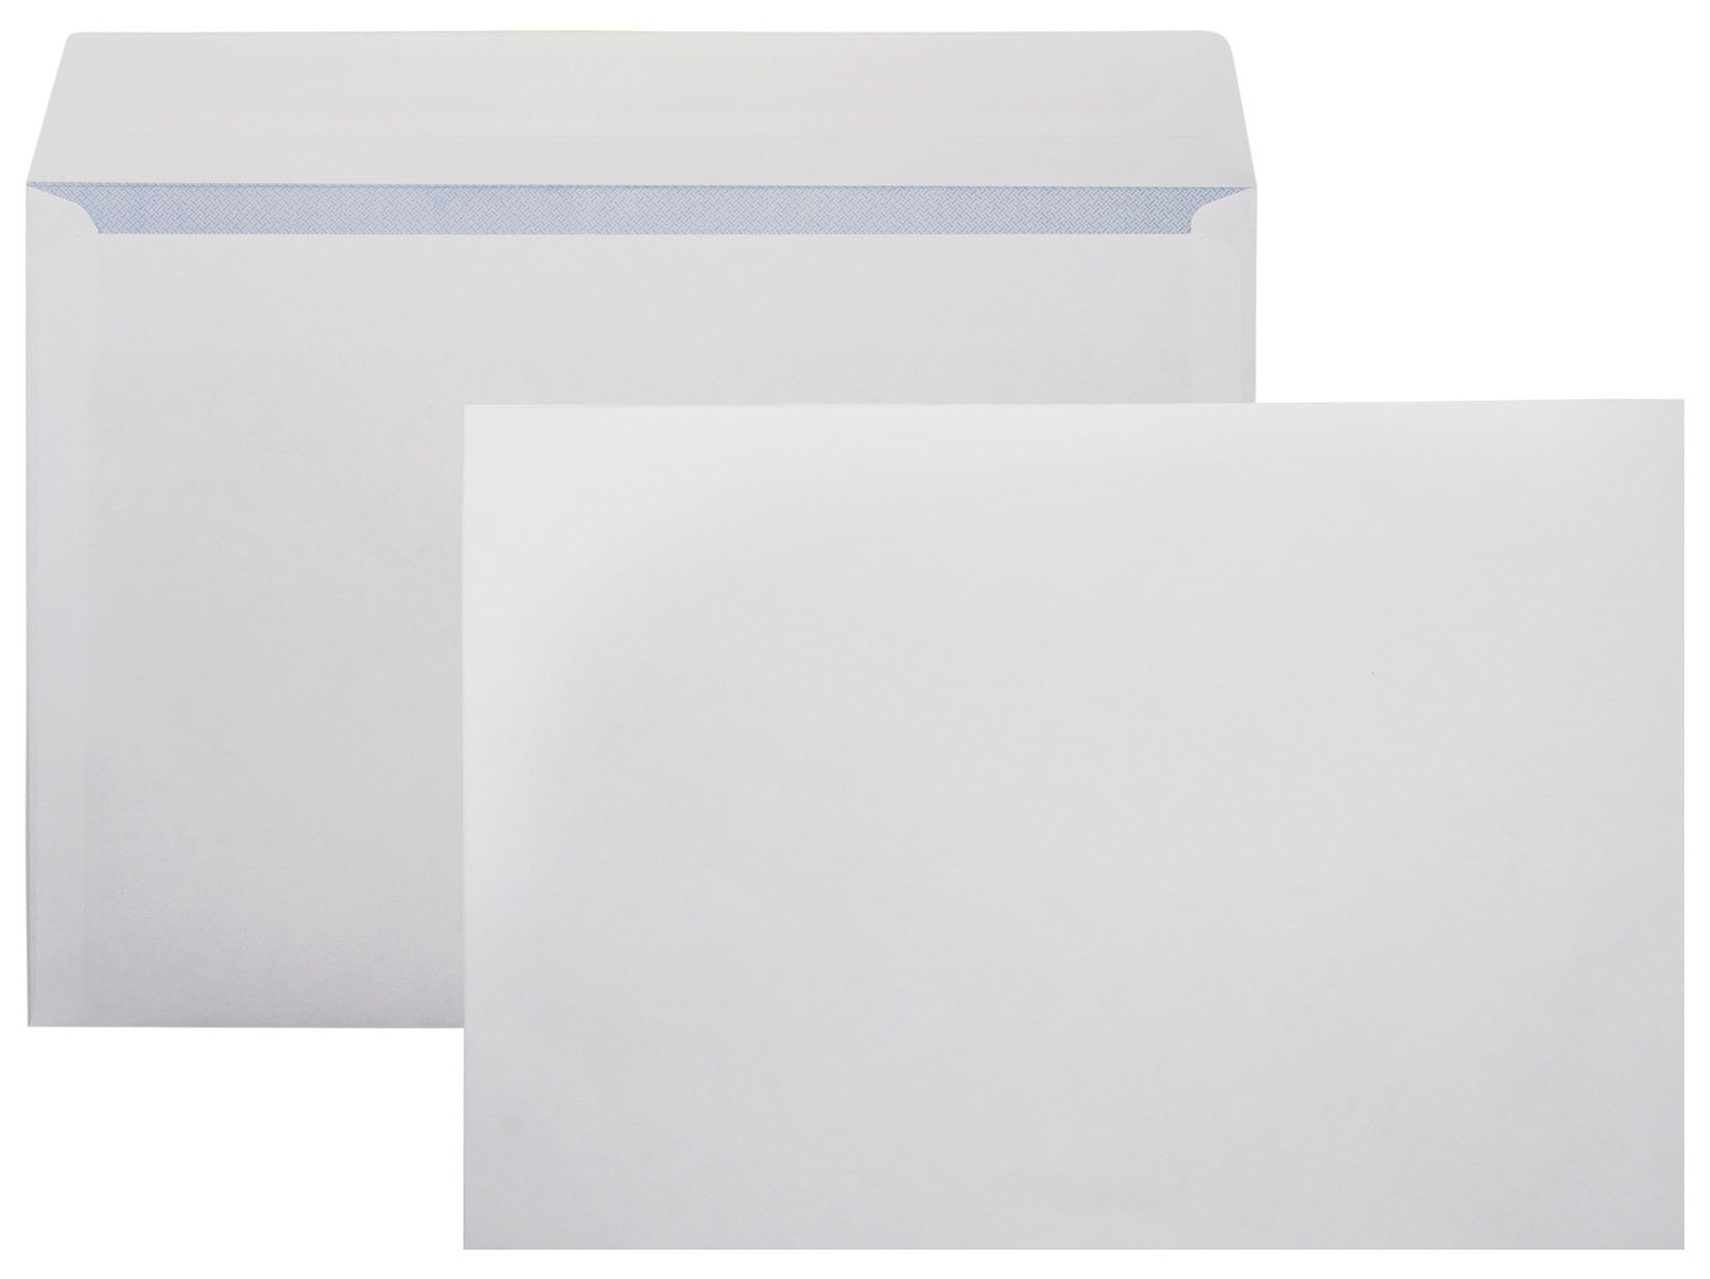 Конверт 70501.1 C4 229x324мм белый силиконовая лента бумага 90г/м2 серая запечатка (pack:1pcs)